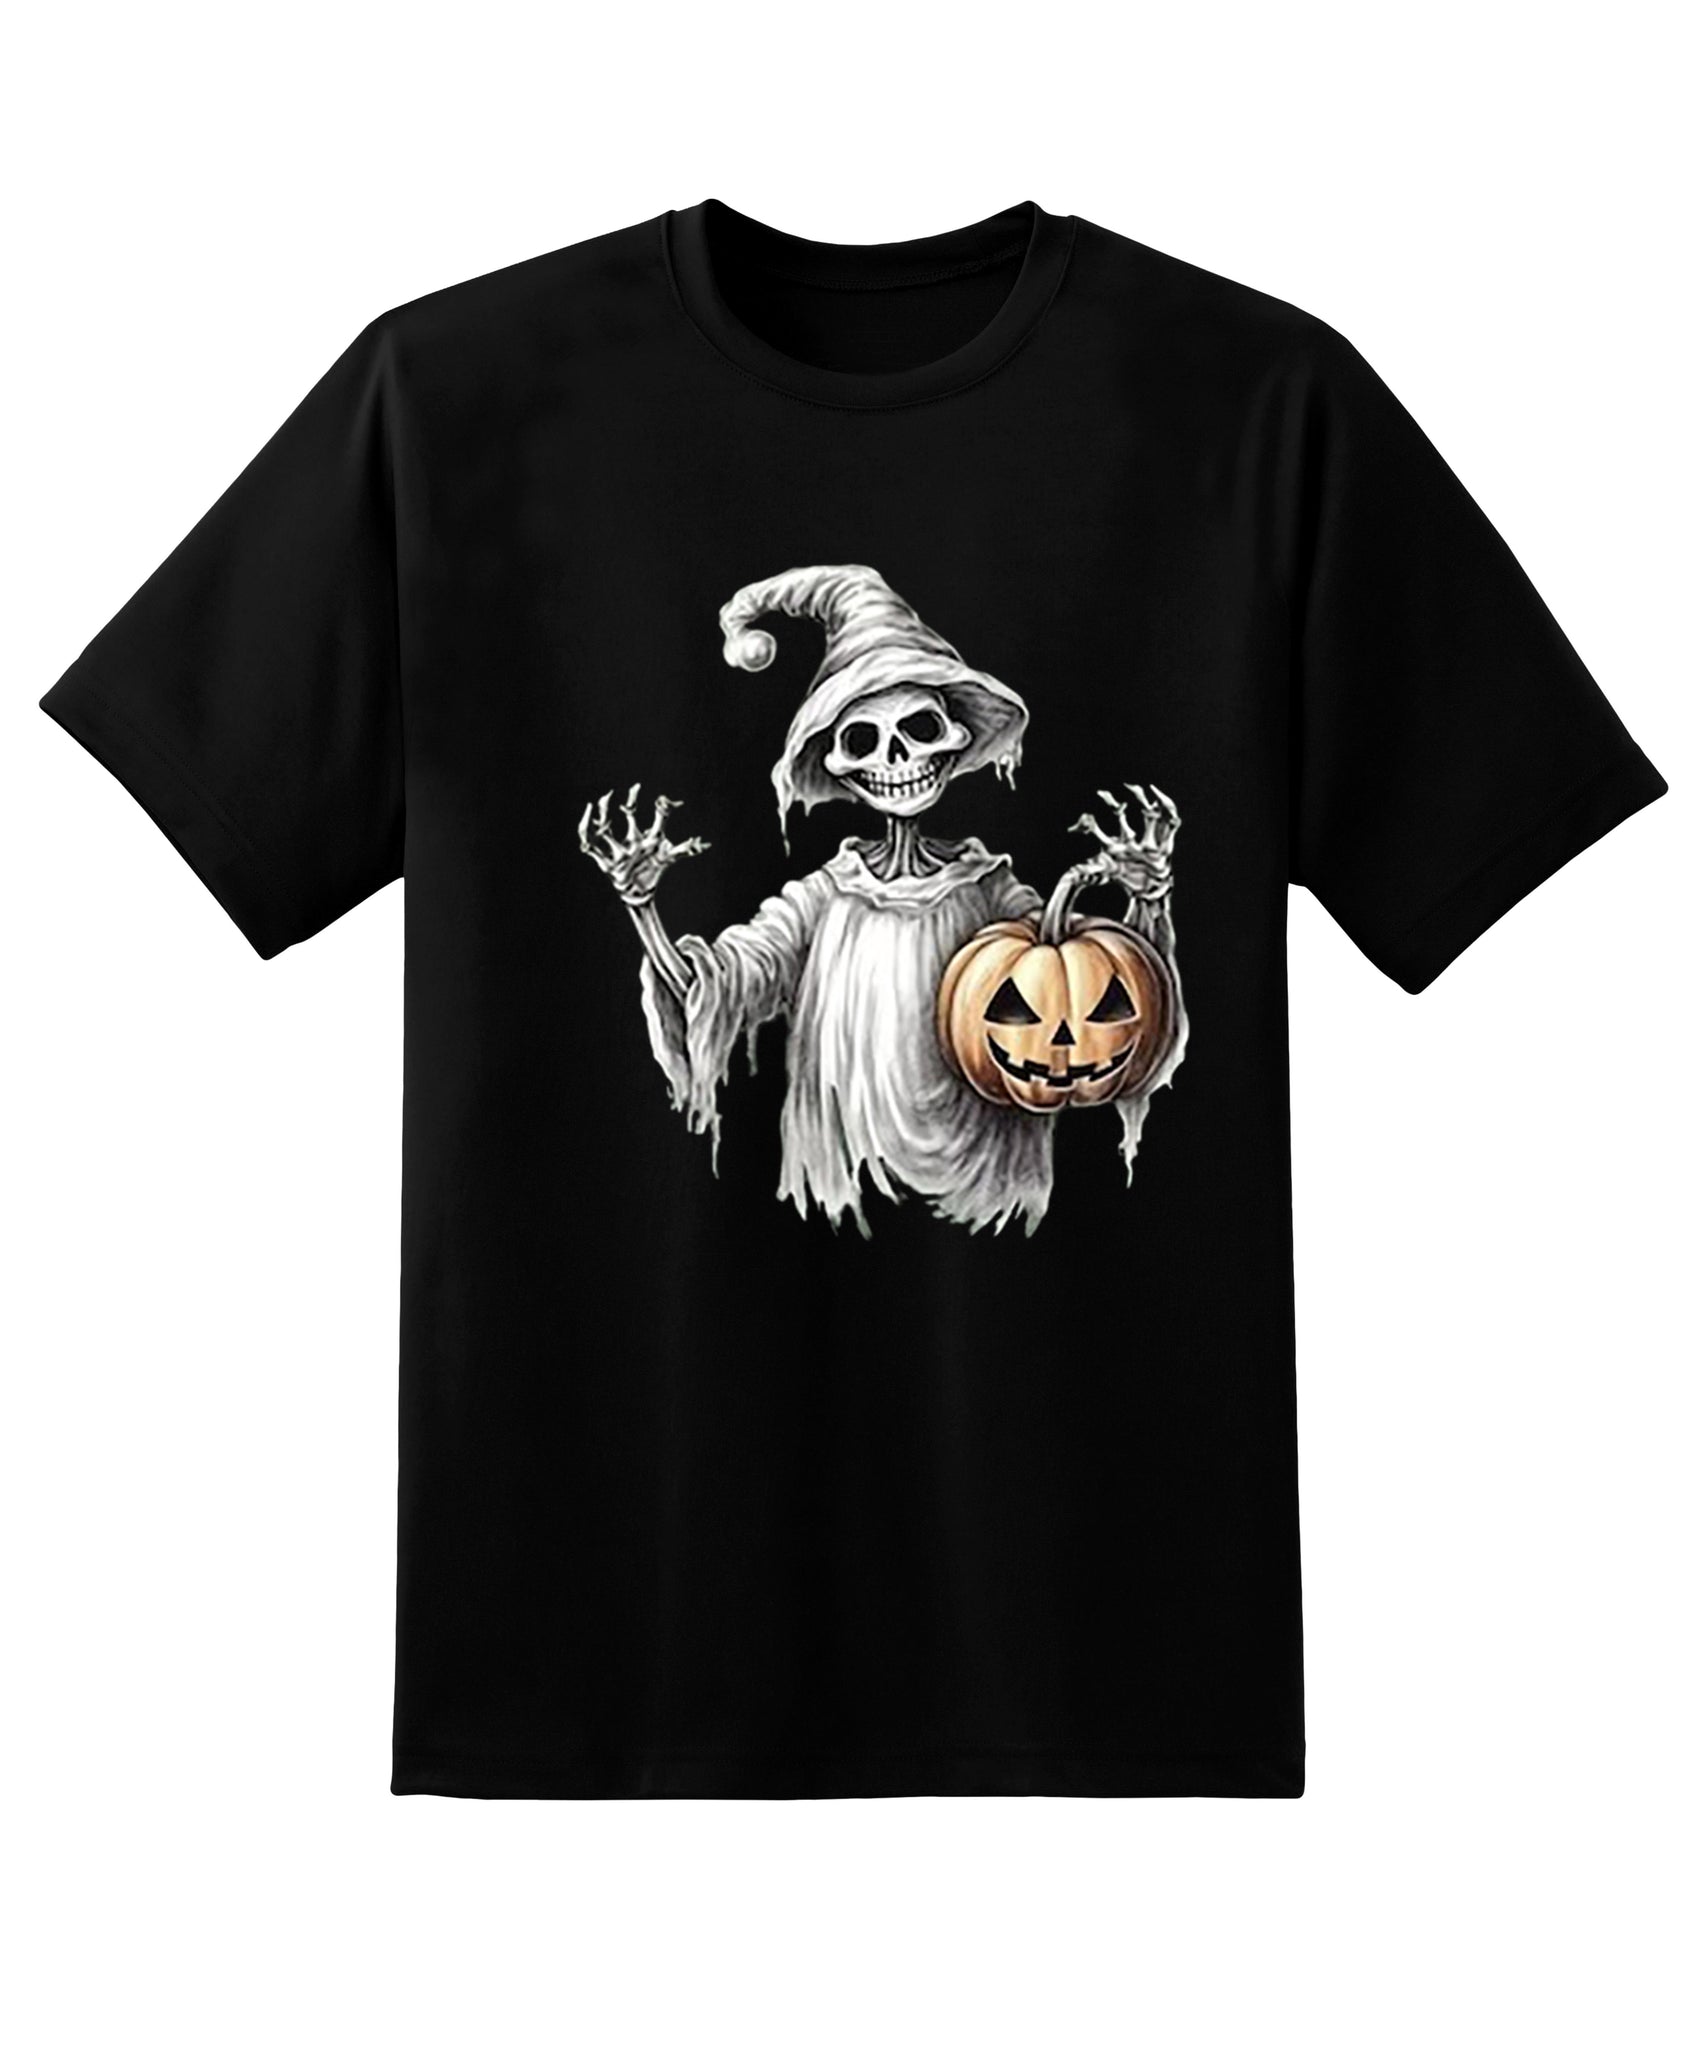 Skitongift Skeleton T-Shirt,Pumpkin Skeleton Halloween Shirt,Pumpkin Shirt,Fall T-Shirt For Women,Halloween T-Shirt